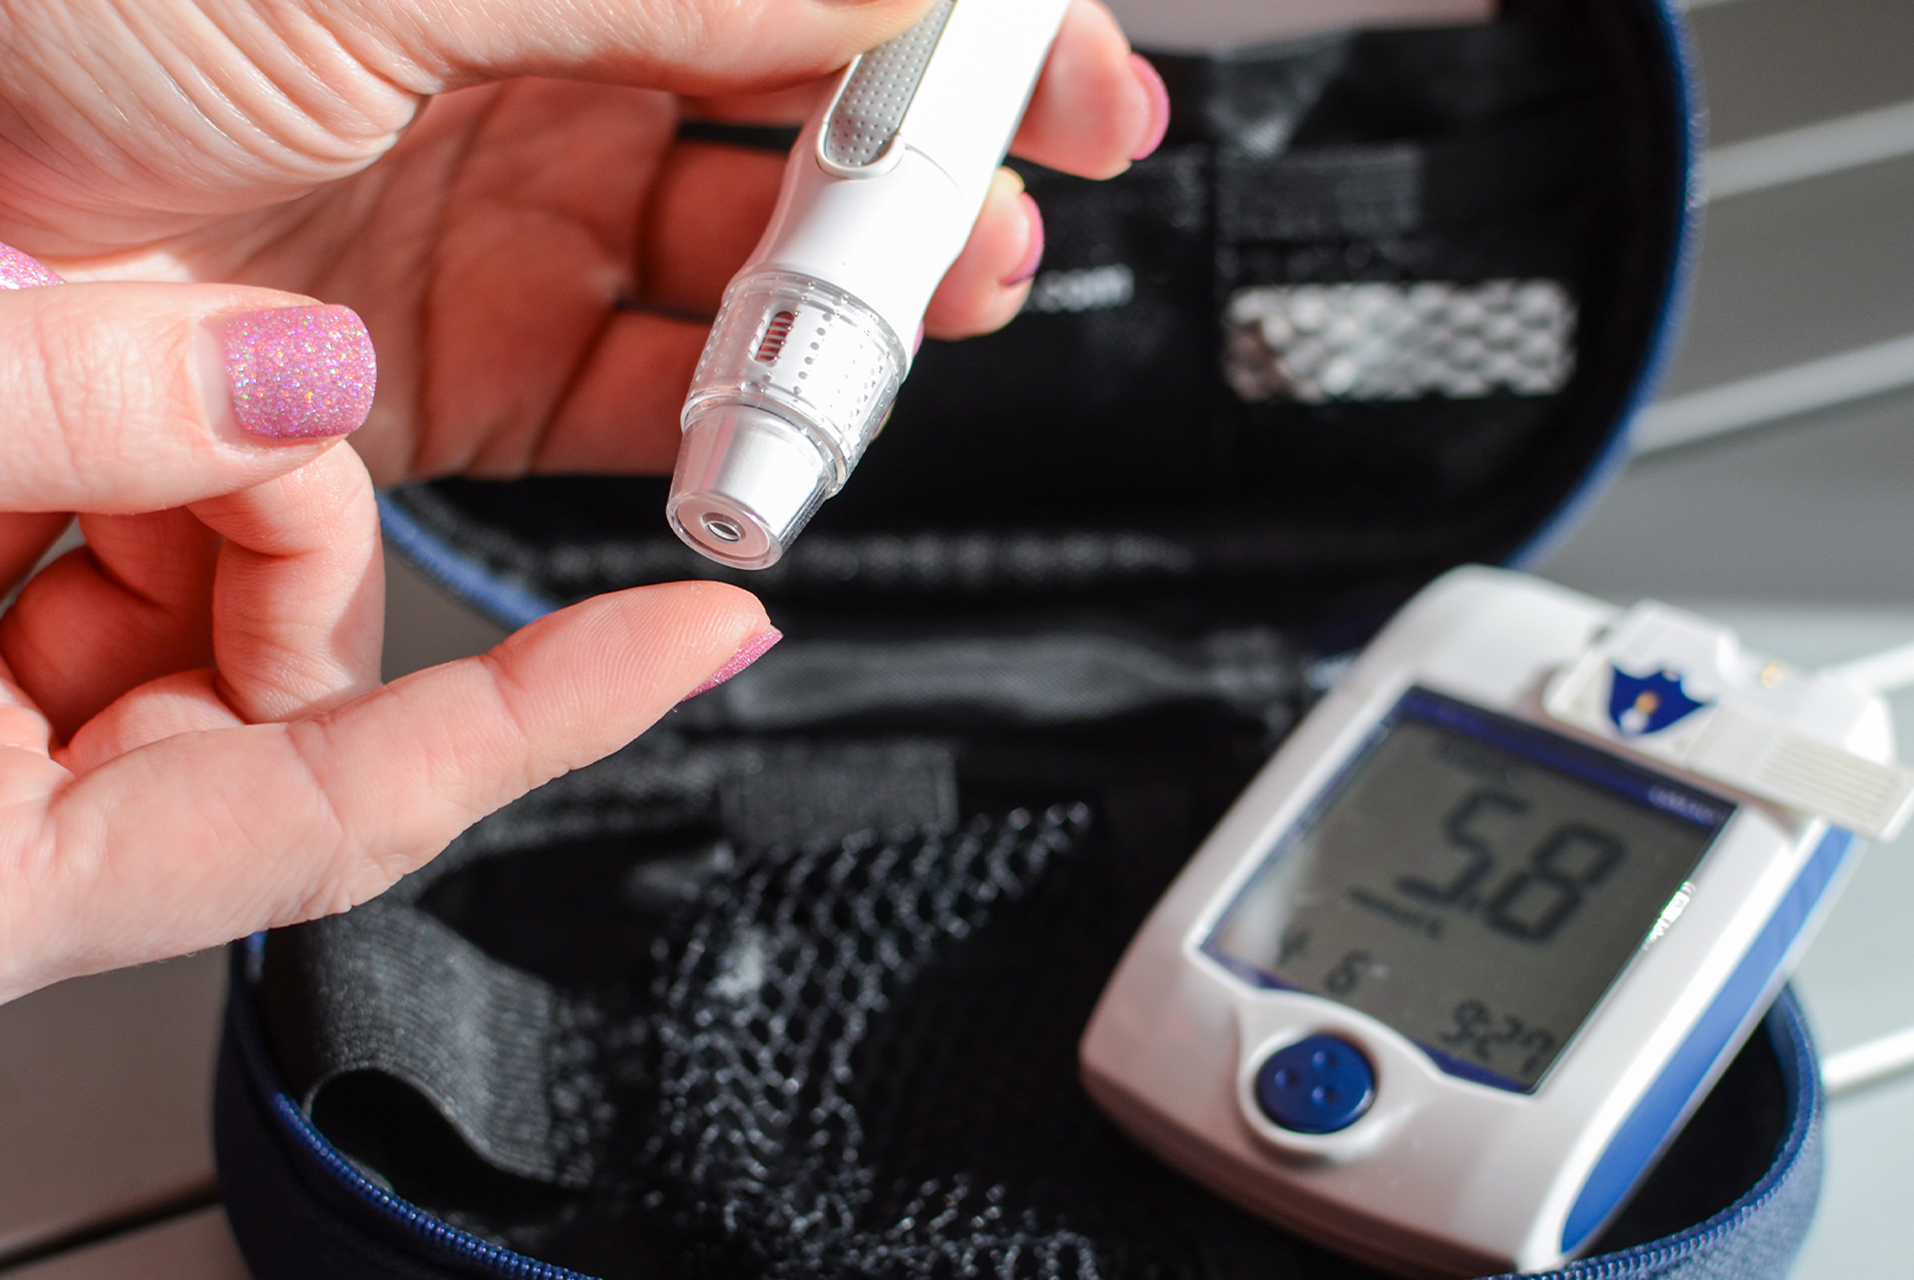 Diabetes - Blood Sugar Teaching/Monitoring